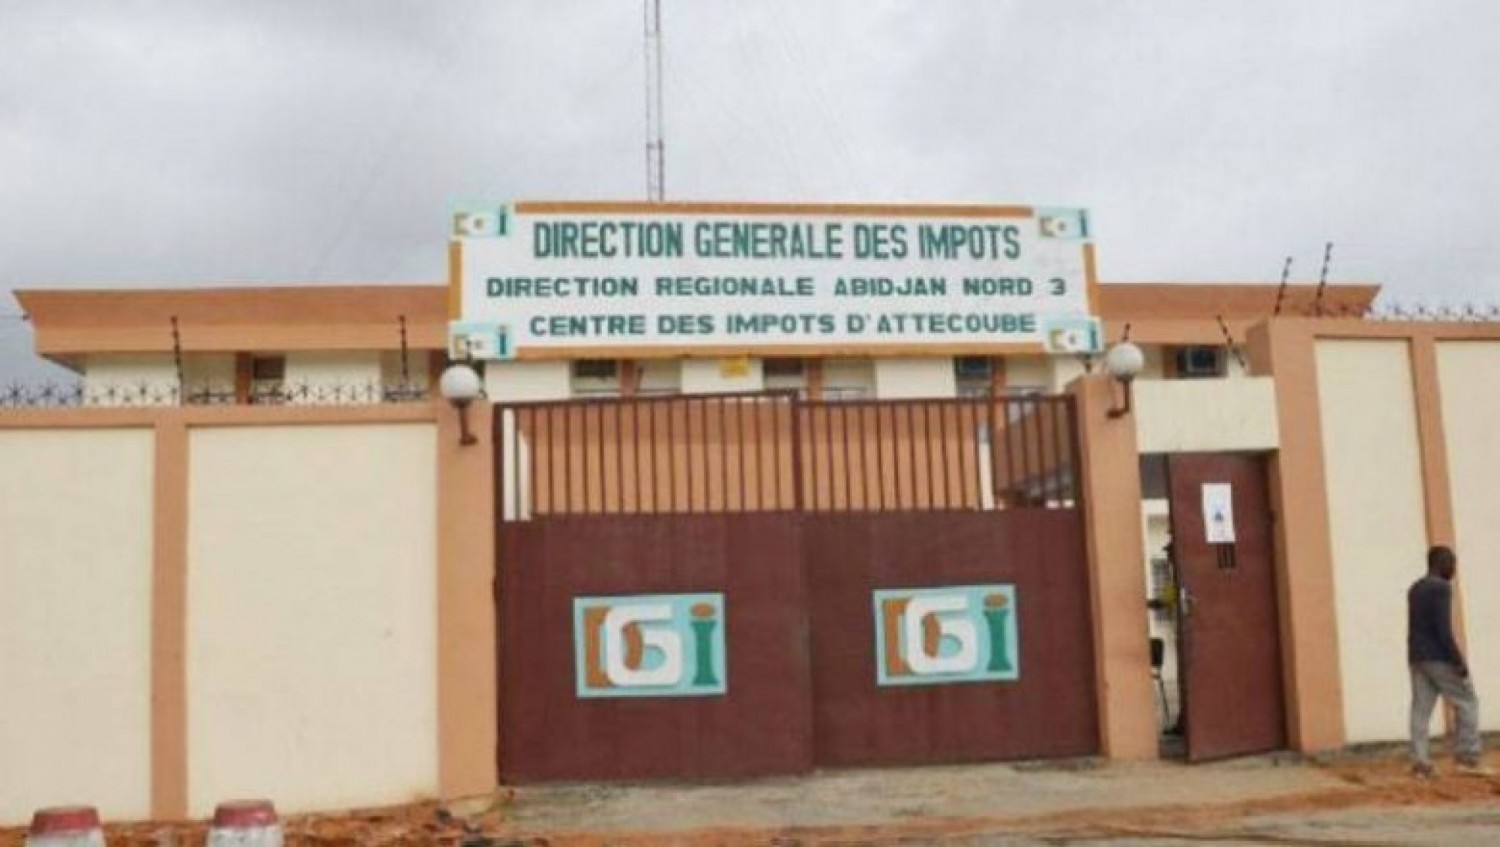 Côte d'Ivoire : Direction Générale des Impôts, un syndicat dénonce : « Les gens ne veulent pas aller à la retraite. C'est un gros problème »